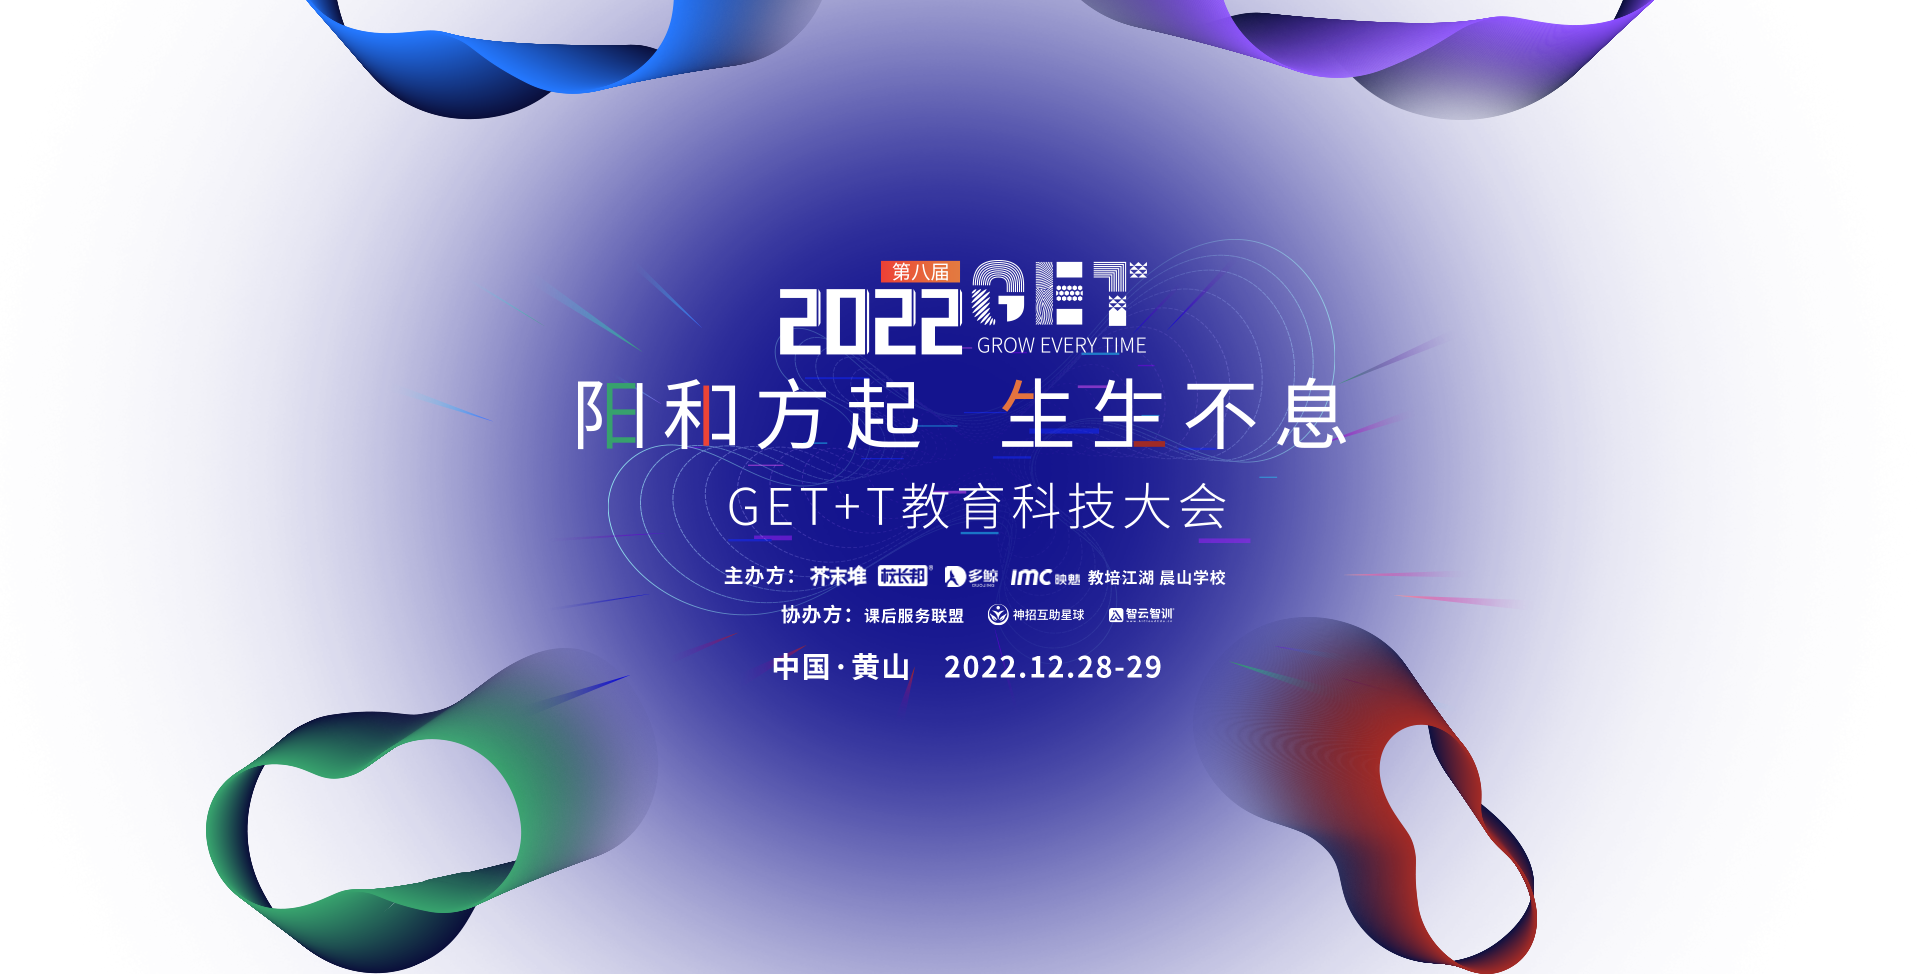 GET2022 阳和方起 生生不息 GET+T教育科技大会 中国·黄山 2022.12.28-29